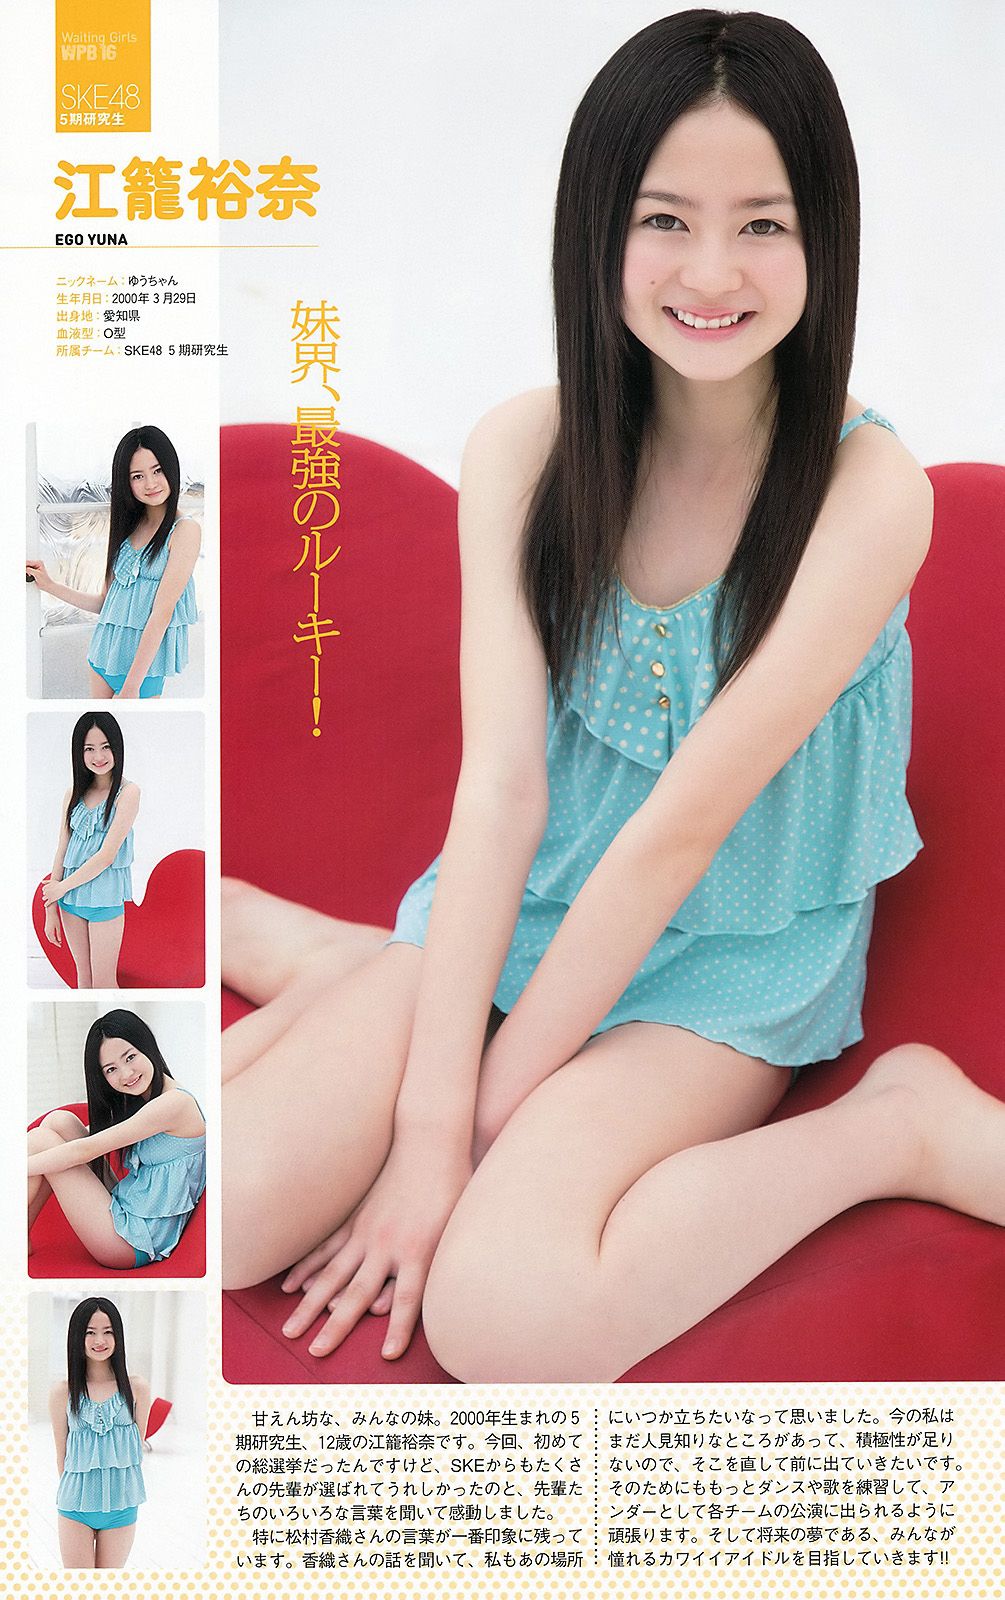 AKB48 Atsuko Maeda Riria Riria Sayaka Okada [Wöchentlicher Playboy] 2012 Nr. 36 Foto Seite 42 No.cc665c